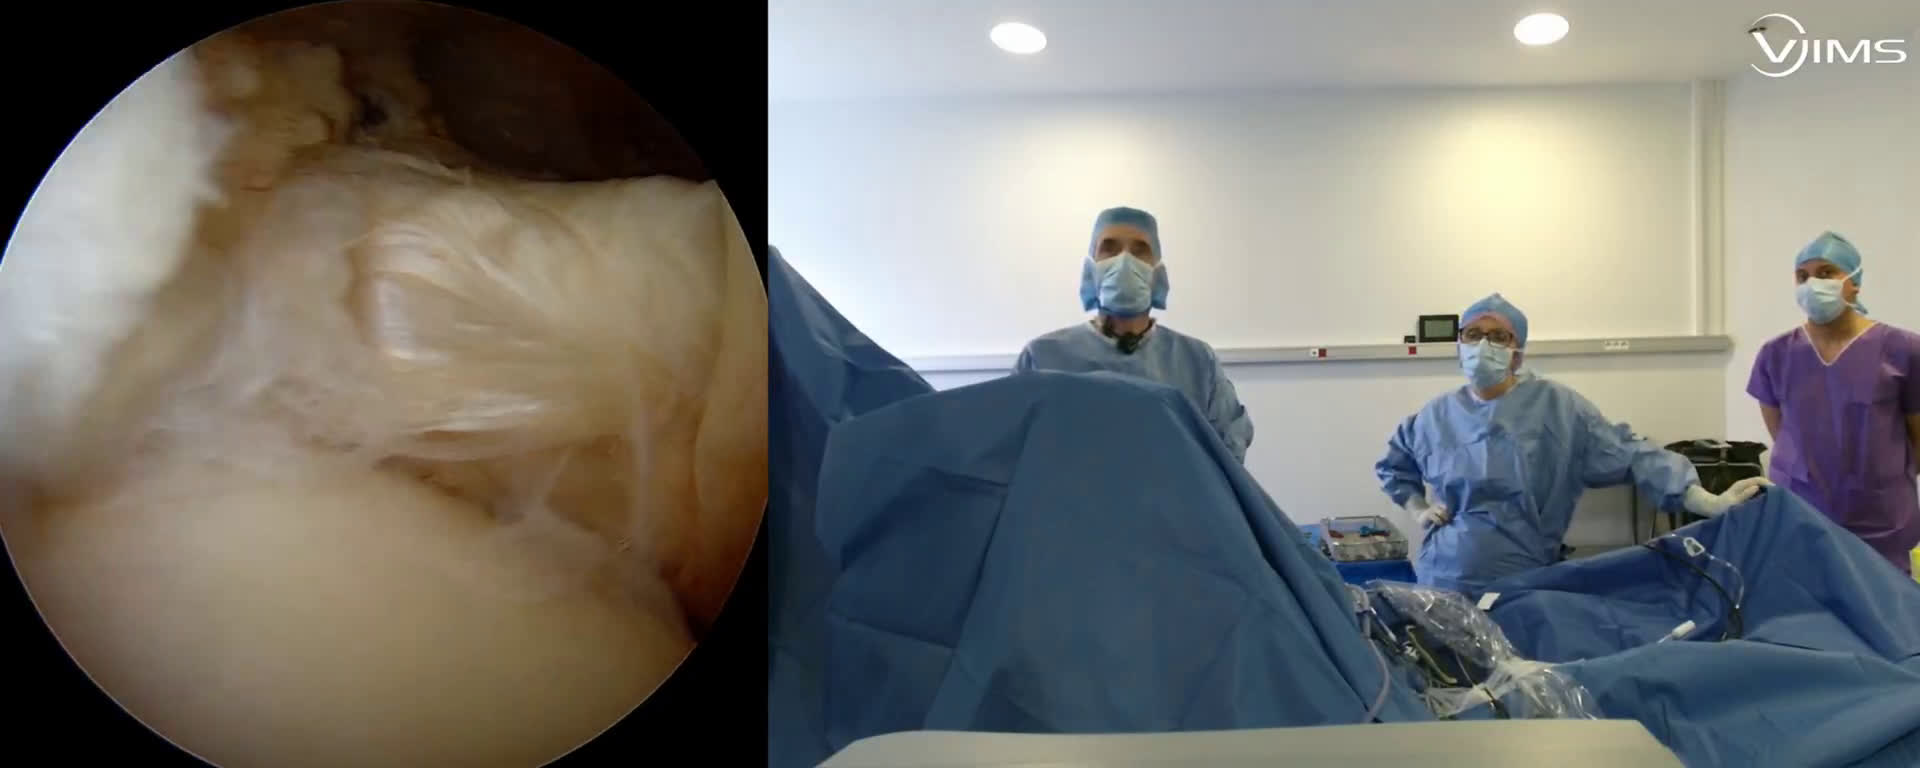 Réparation sous arthroscopie d’une lésion isolée du tendon du sous scapulaire de l’épaule (Dr. Joudet)